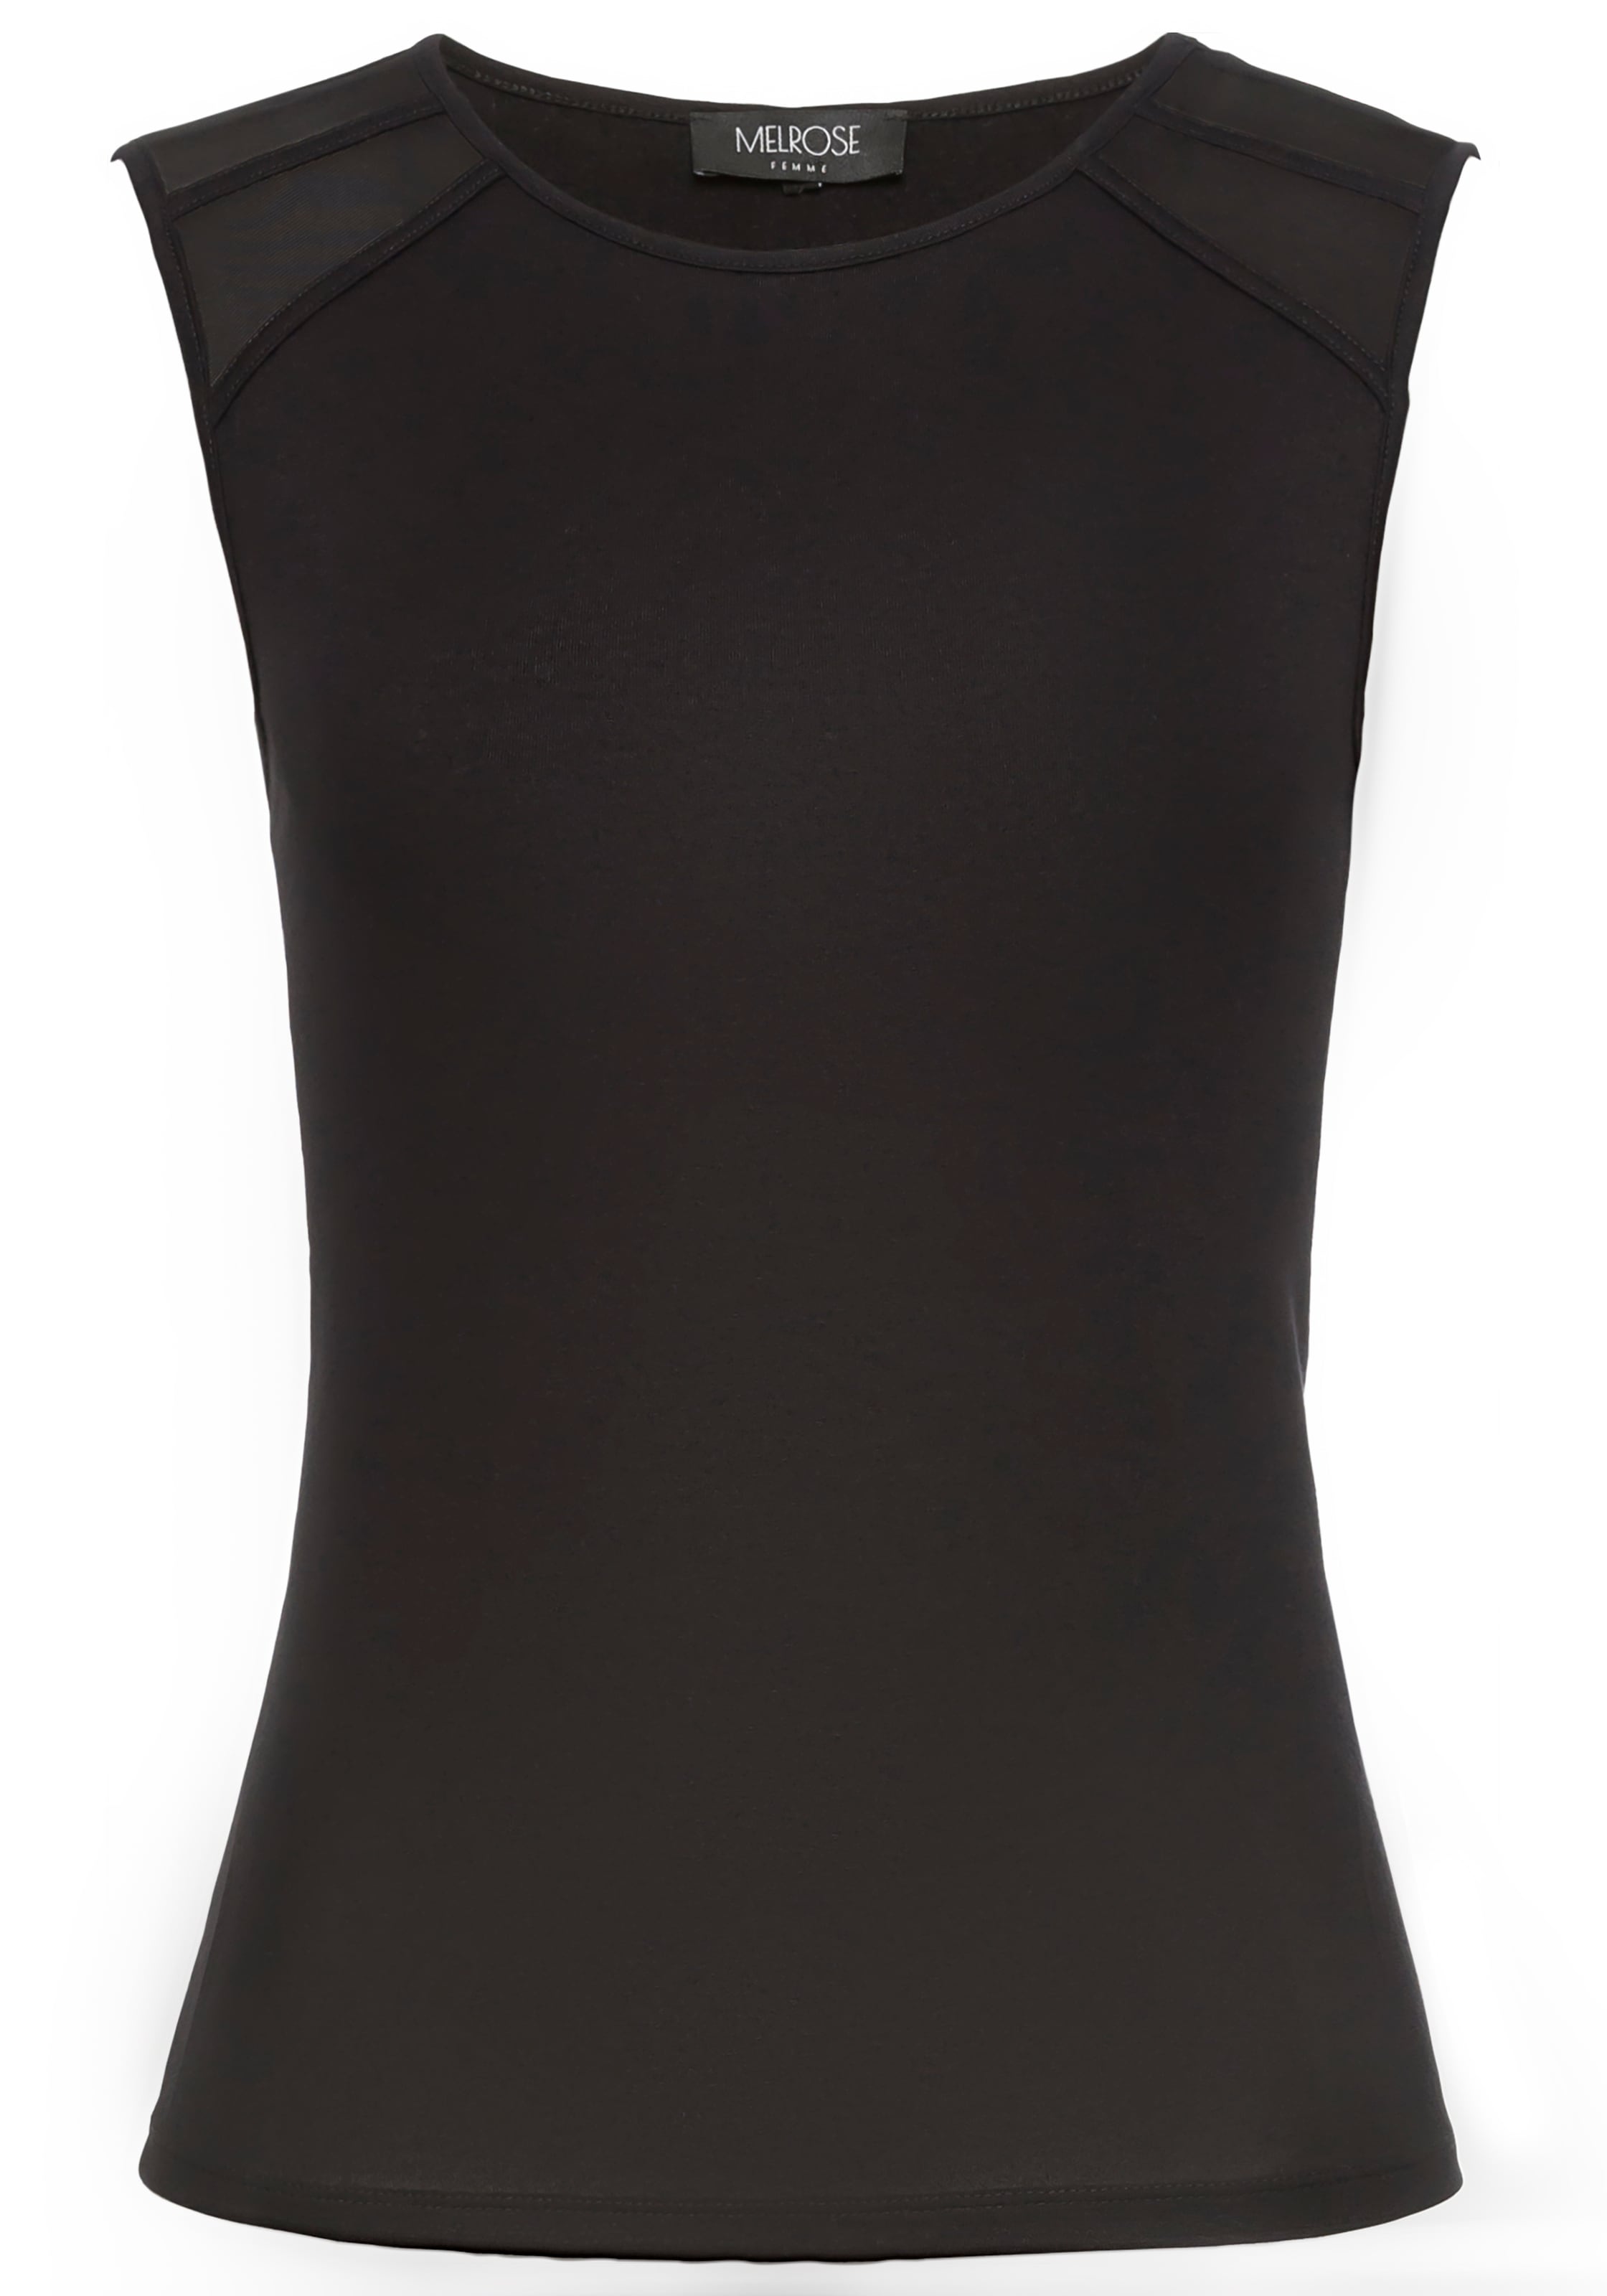 Melrose Mesh-Top, mit eleganten Mesh-Details an der Schulter - NEUE KOLLEKTION